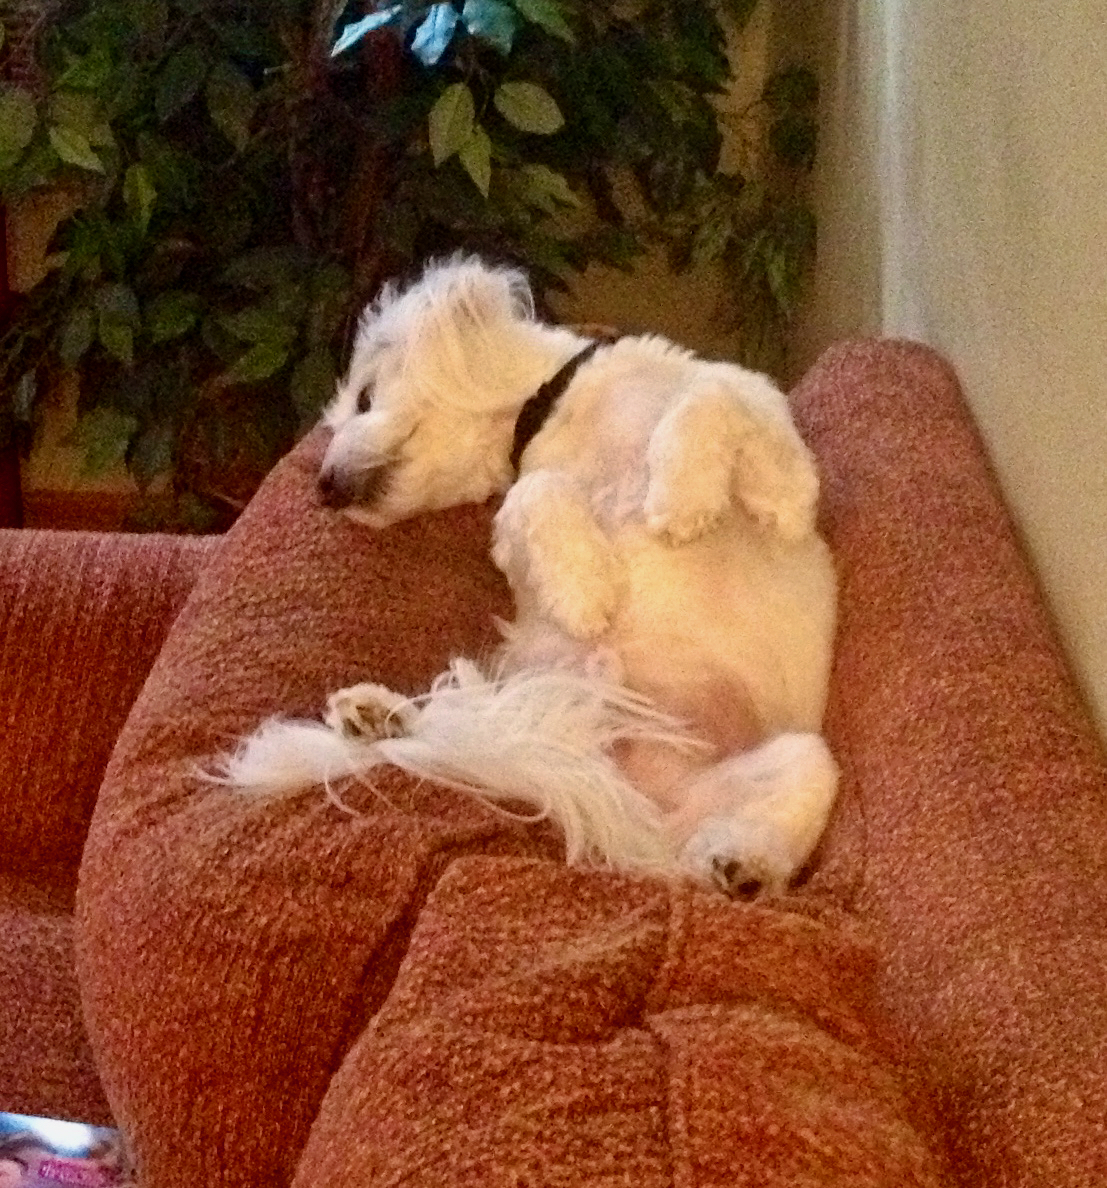 A Coton de Tulear dog resting in a weird pose.